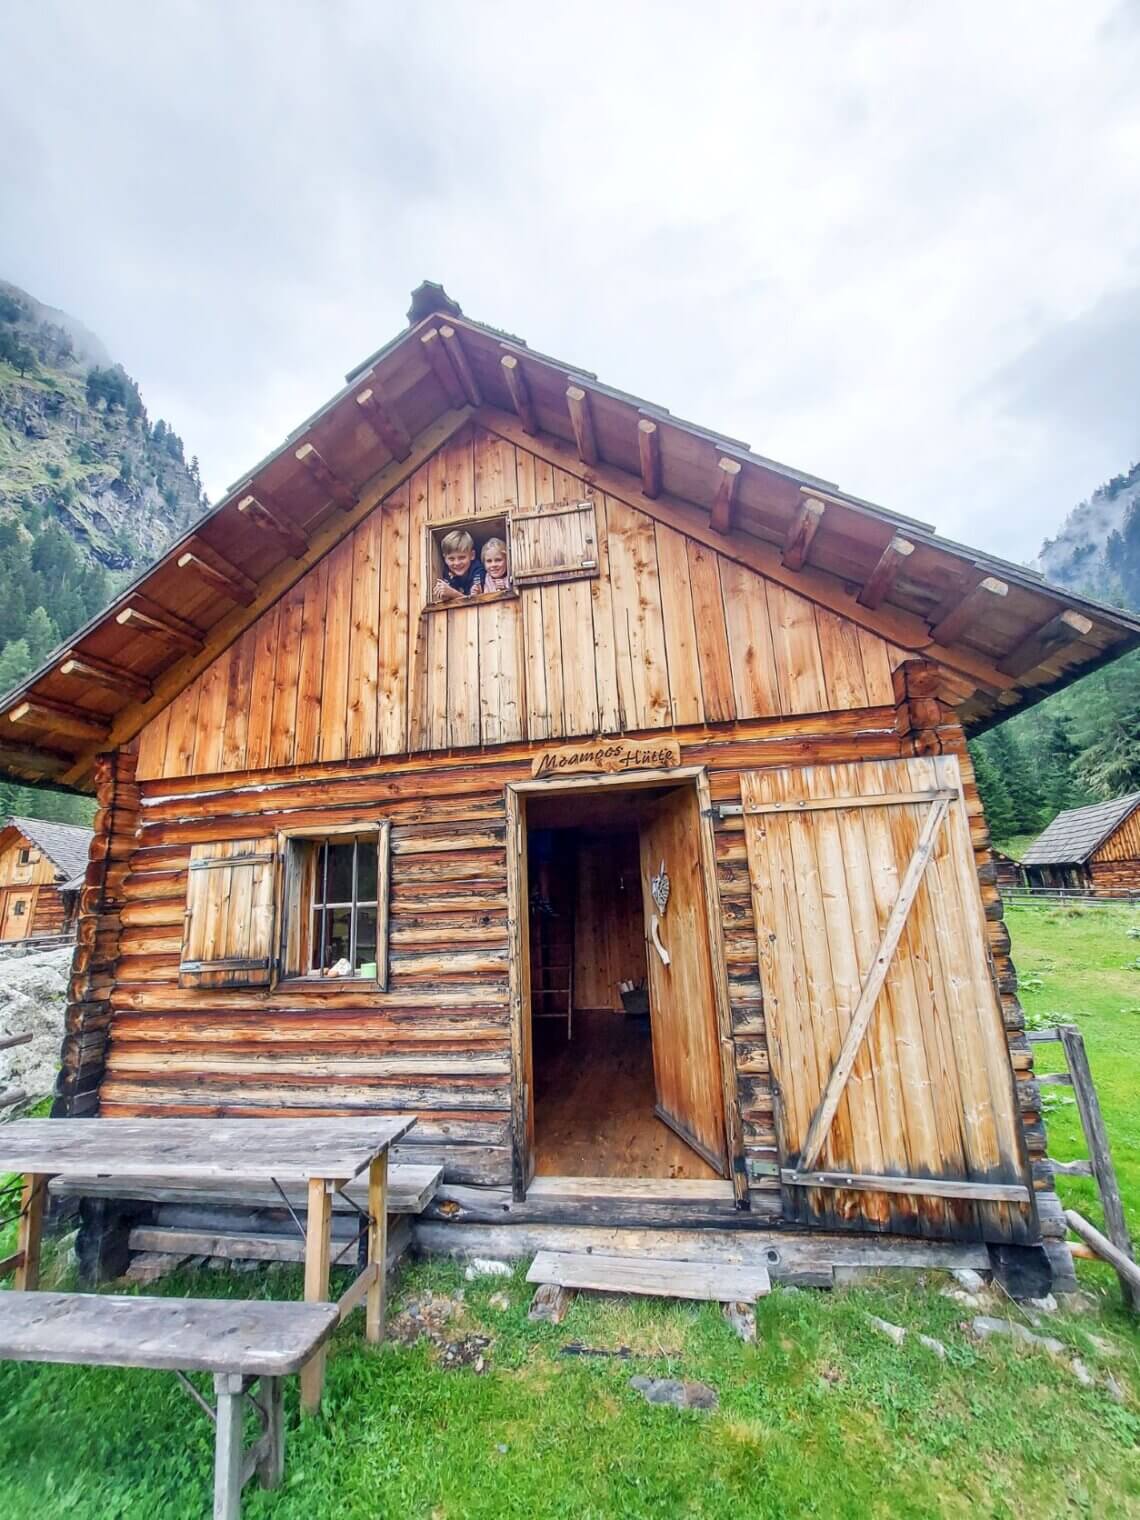 De Moamooshütte is een echte knusse Oostenrijkse berghut. 